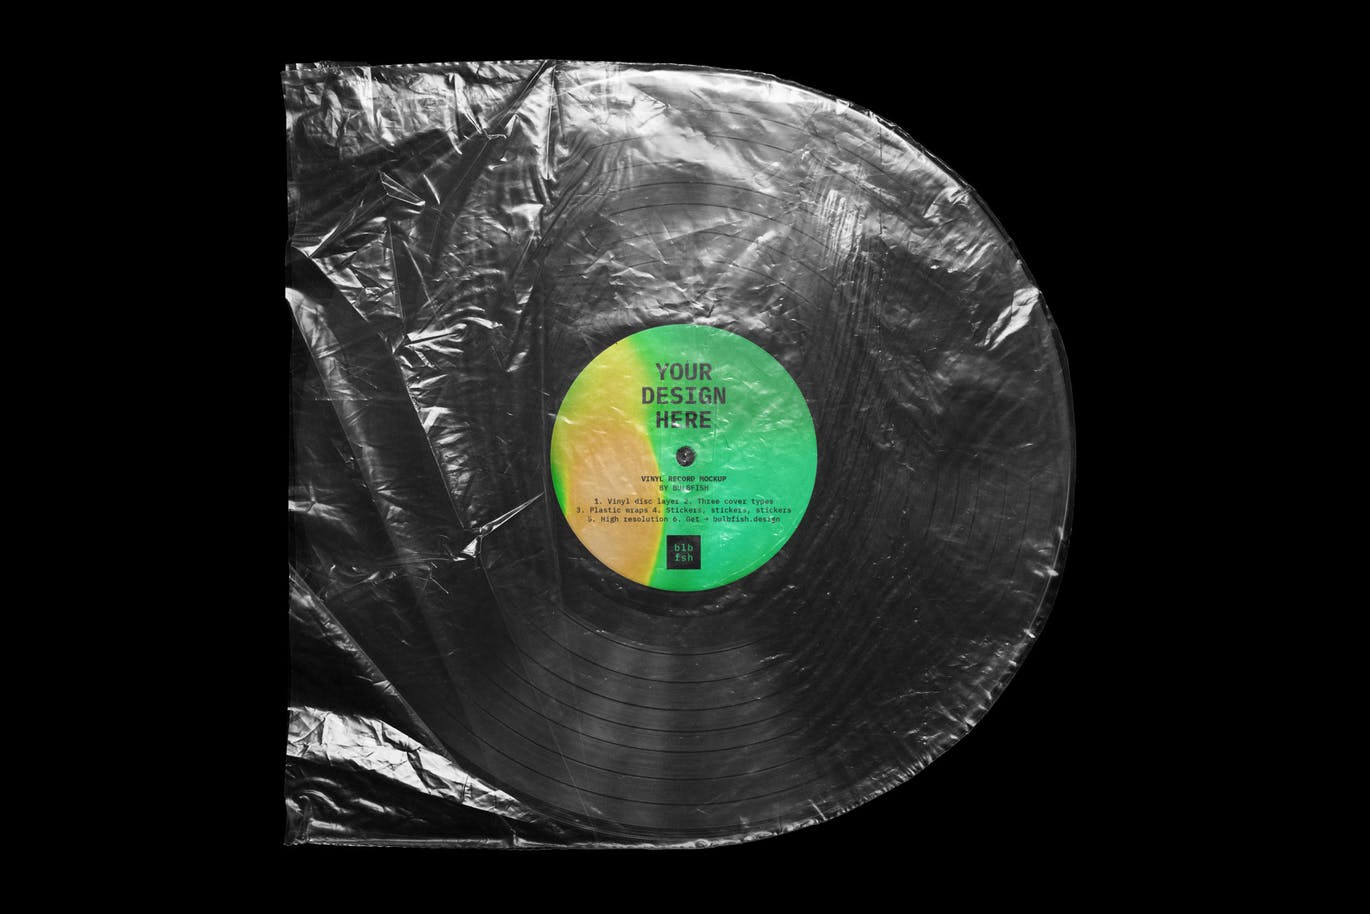 乙烯基唱片包装盒及封面设计图蚂蚁素材精选模板 Vinyl Record Mockup插图(5)